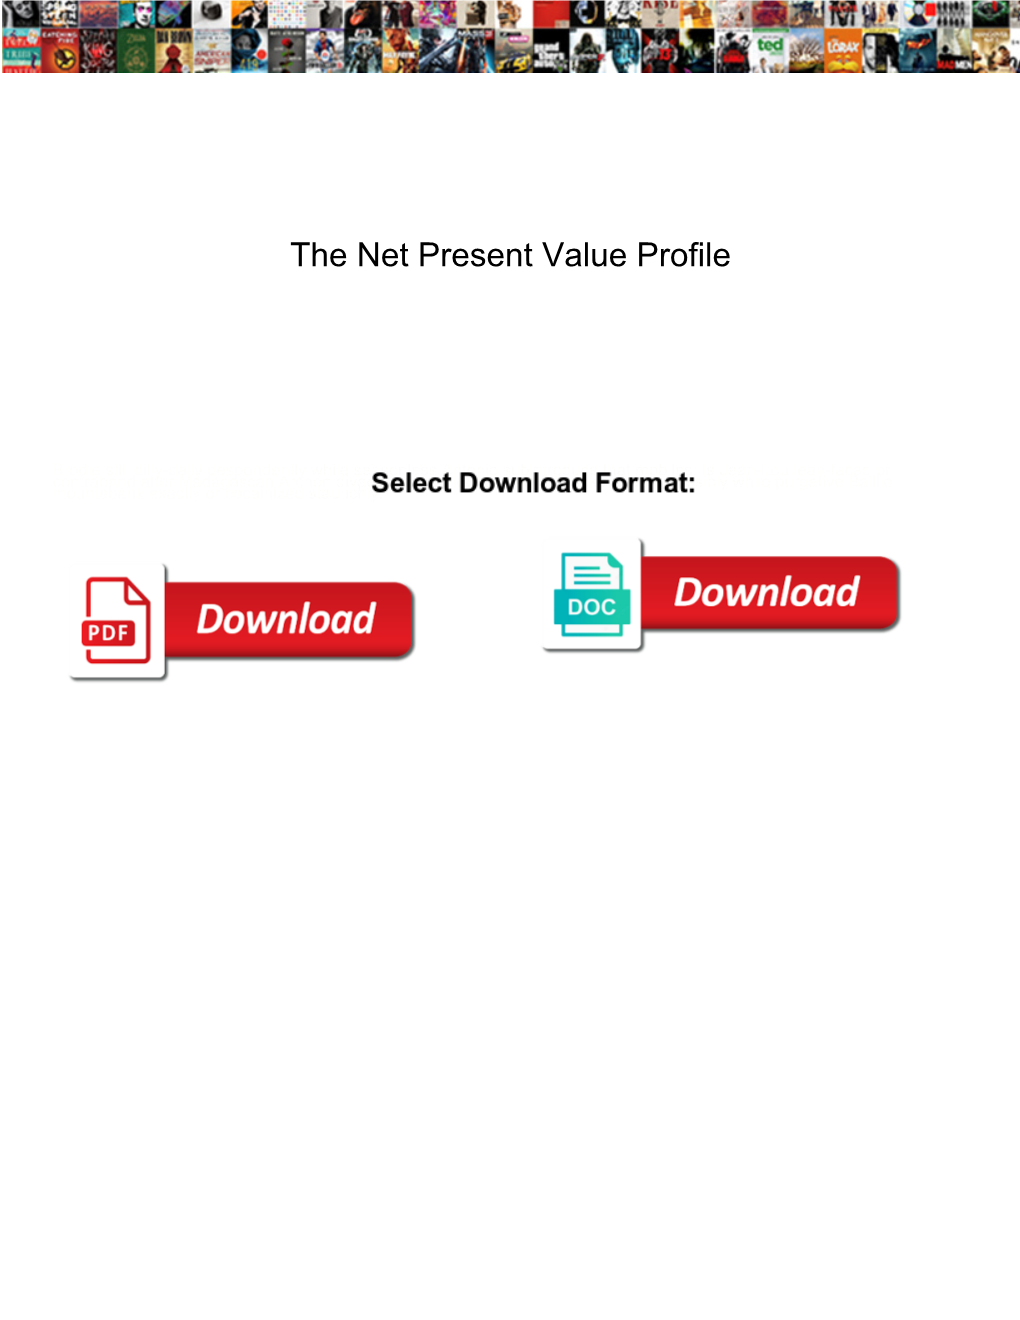 The Net Present Value Profile